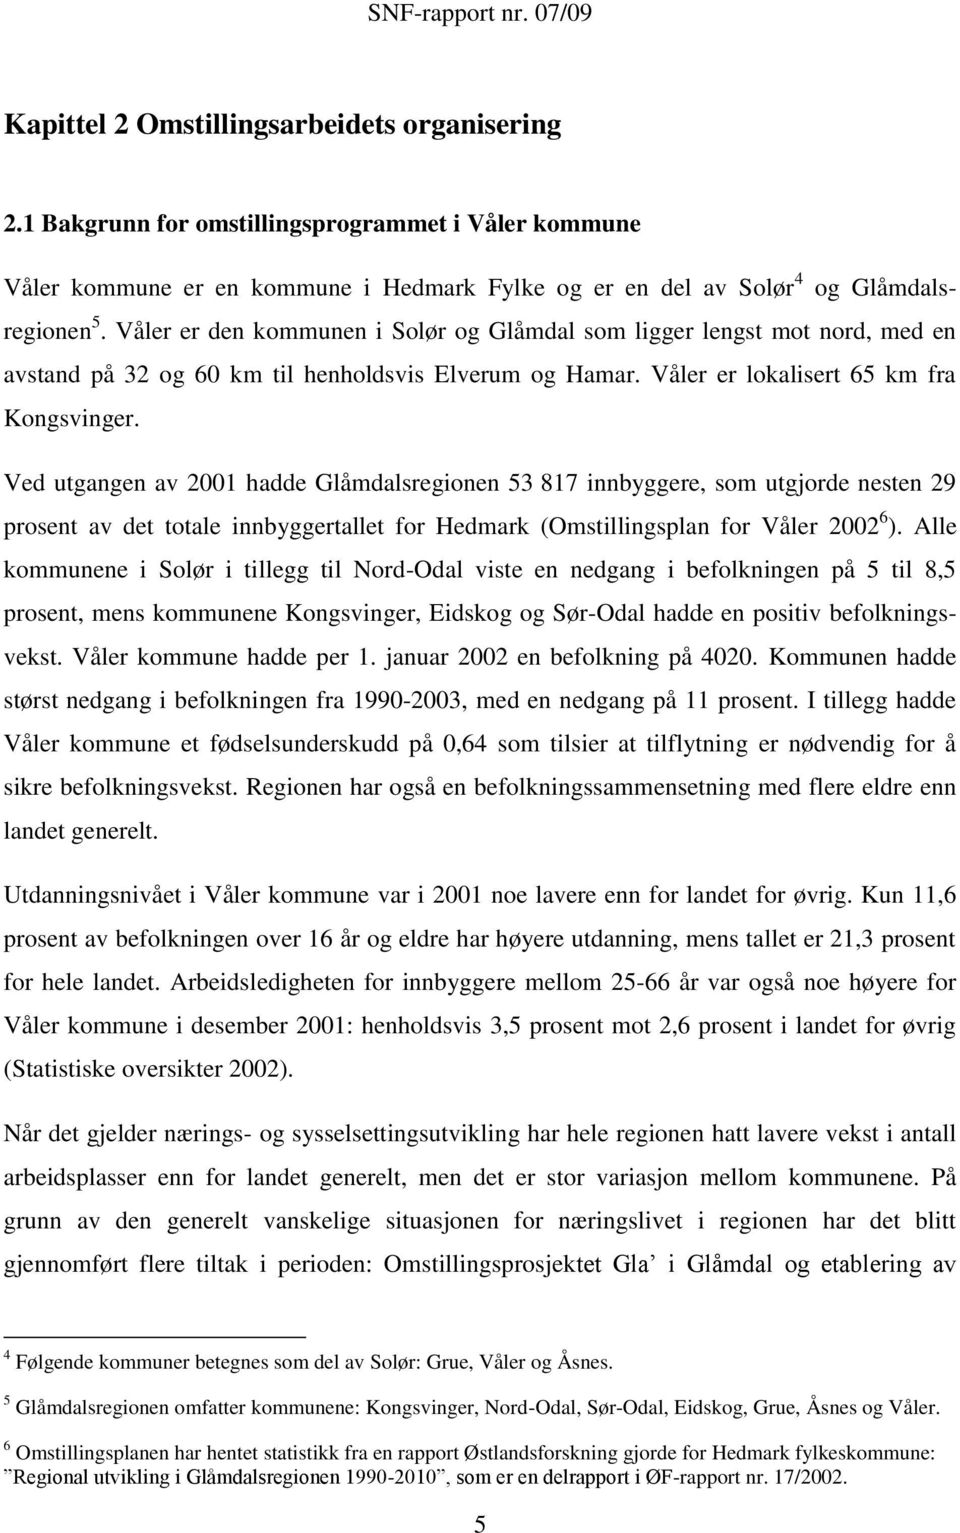 Ved utgangen av 2001 hadde Glåmdalsregionen 53 817 innbyggere, som utgjorde nesten 29 prosent av det totale innbyggertallet for Hedmark (Omstillingsplan for Våler 2002 6 ).